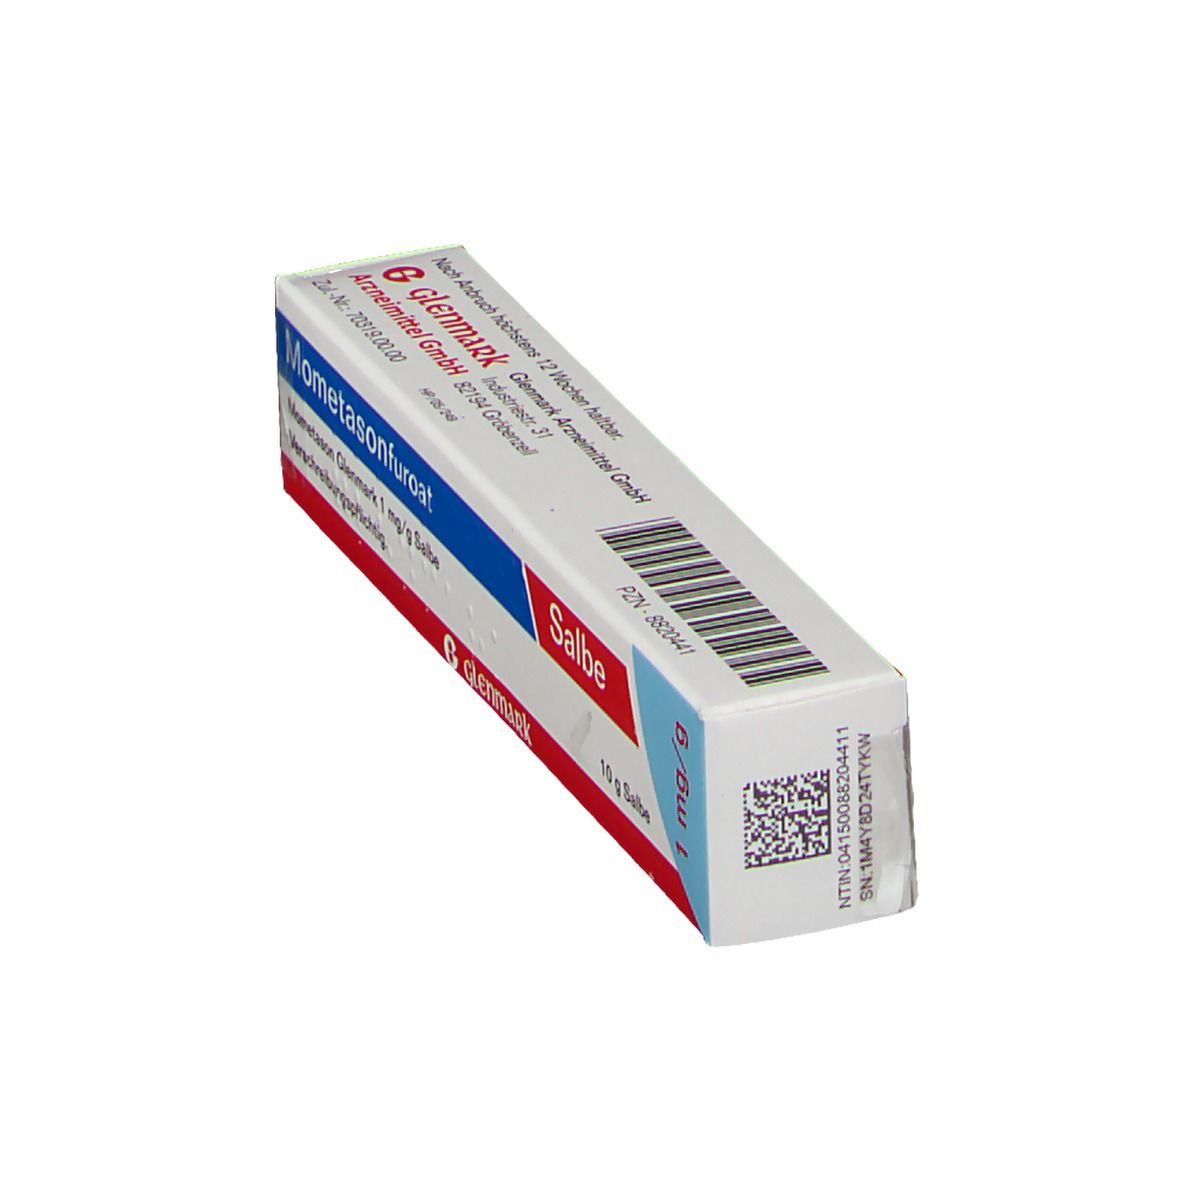 Mometason Glenmark 1 mg/g